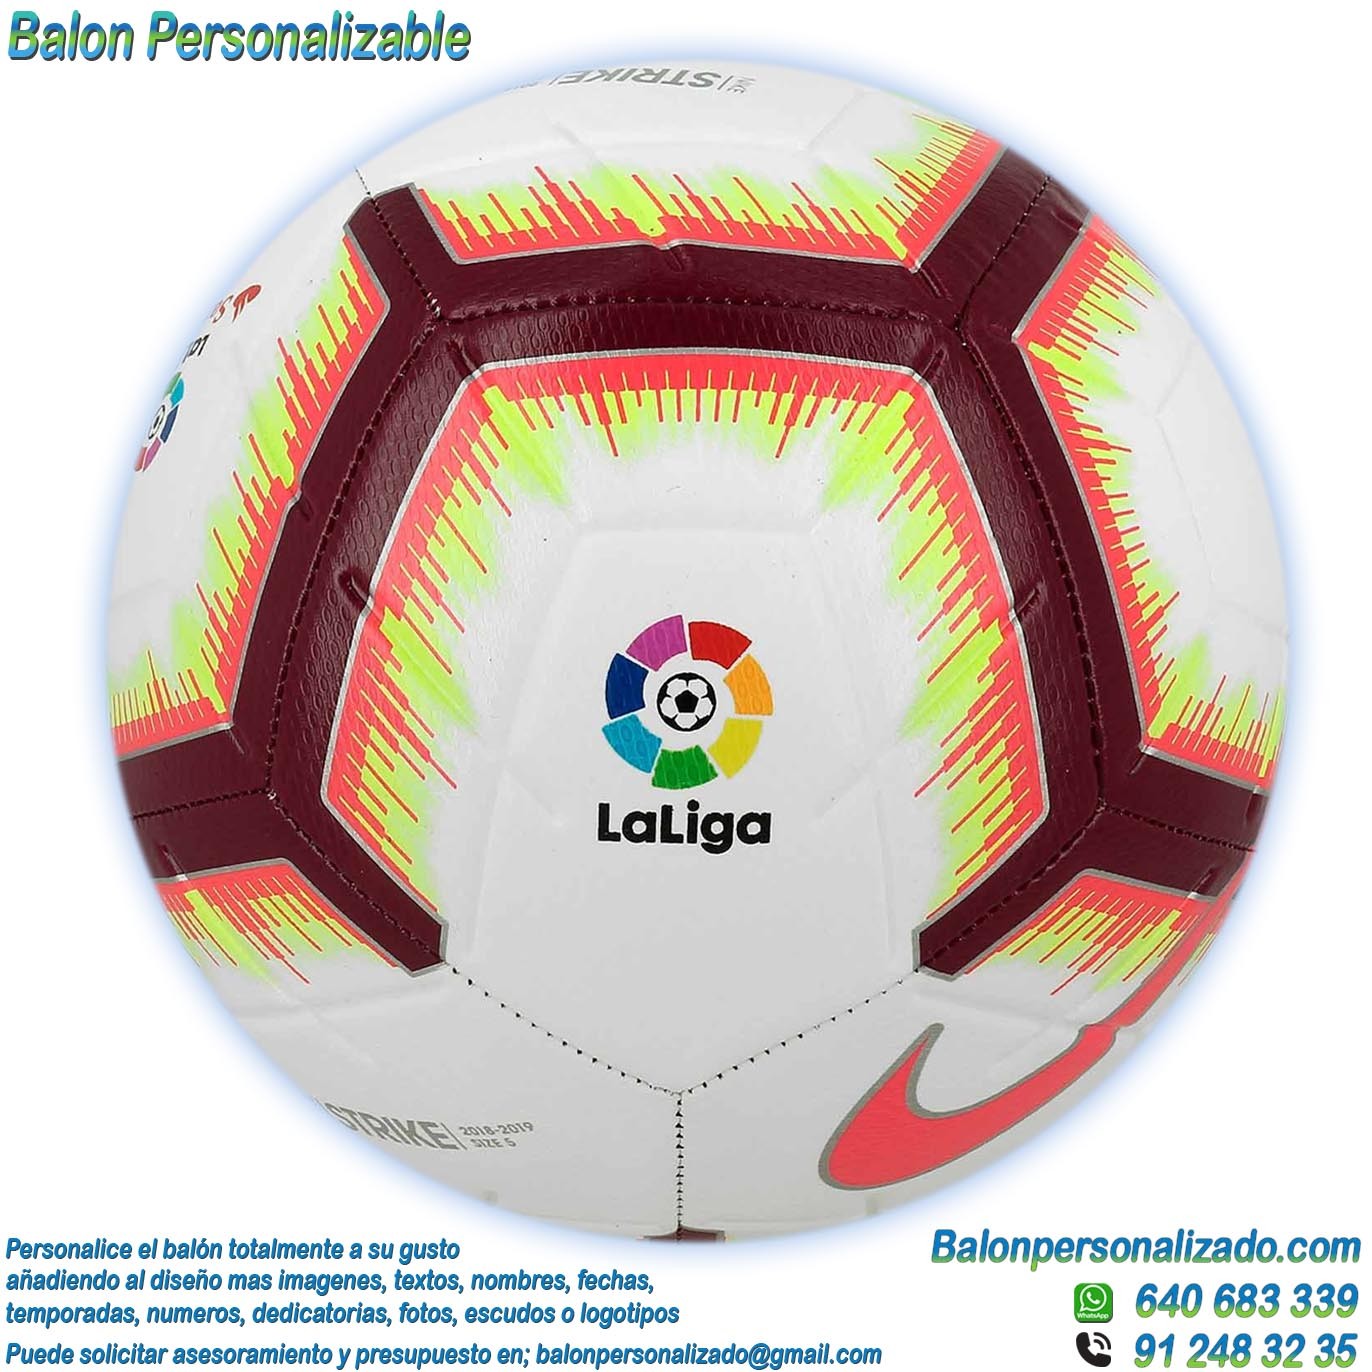 Balón Fútbol Personalizable imagen la liga 2018-2019